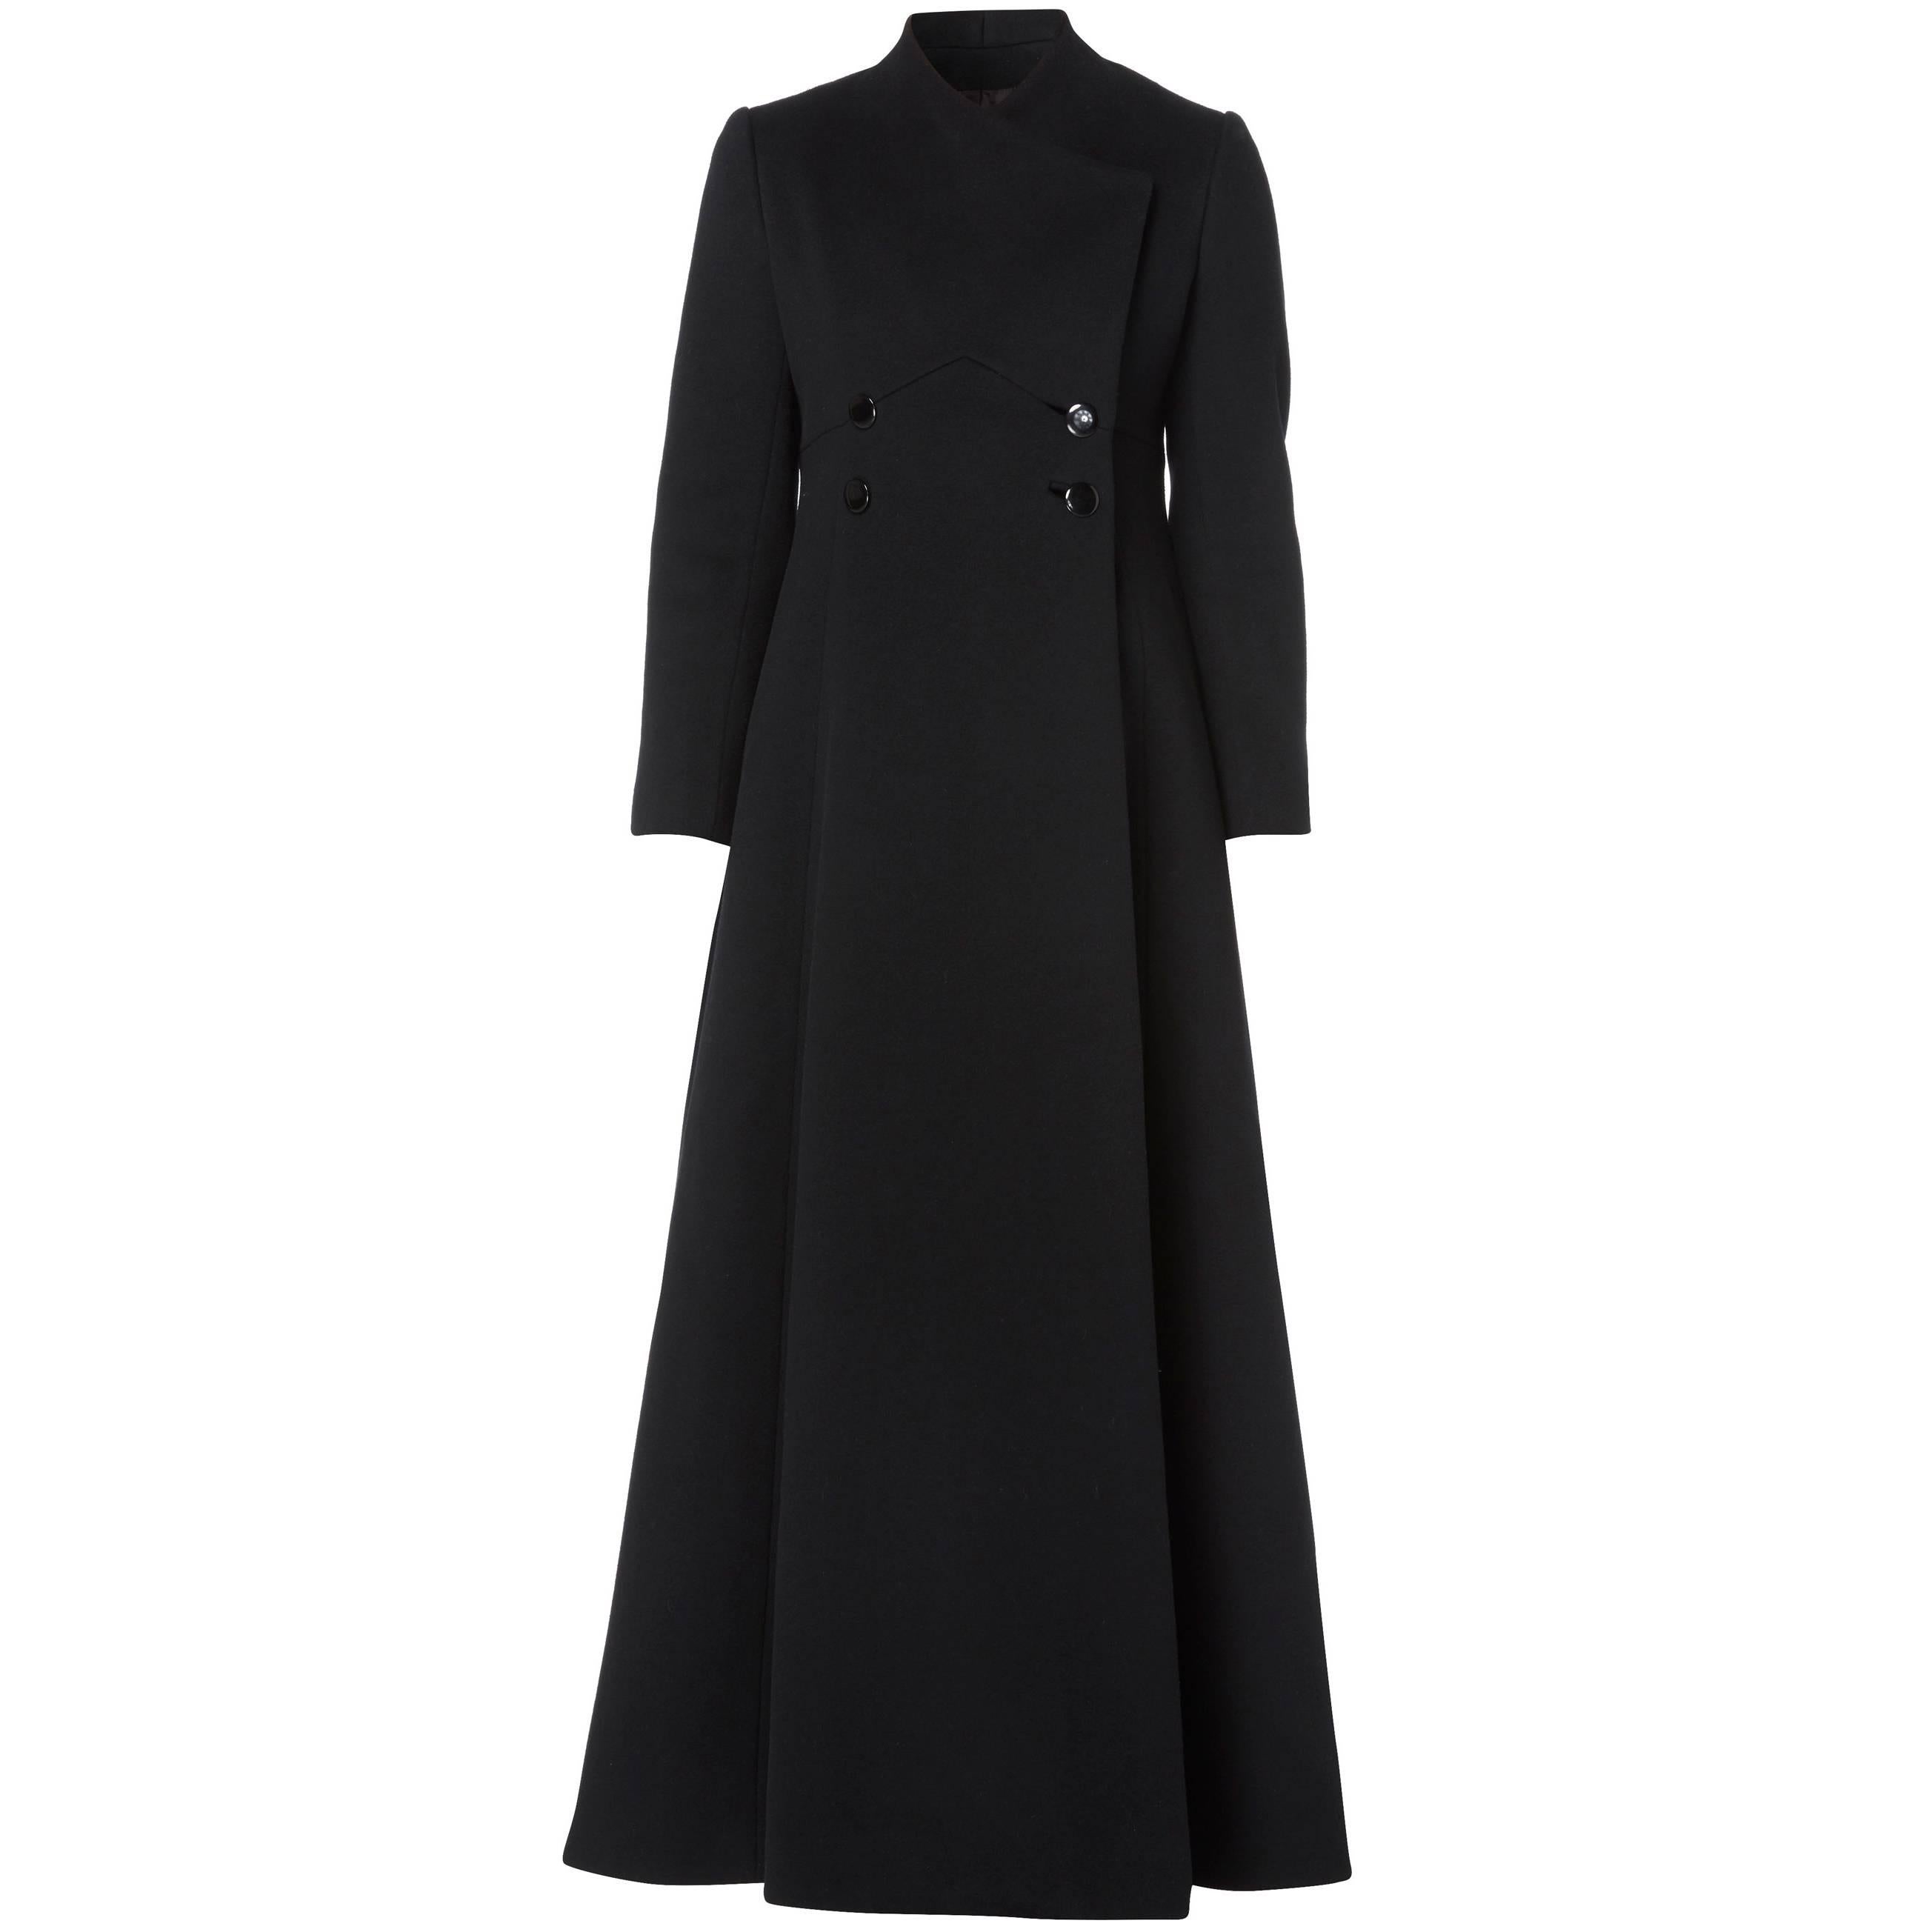 Harve Bernard black coat, circa 1968